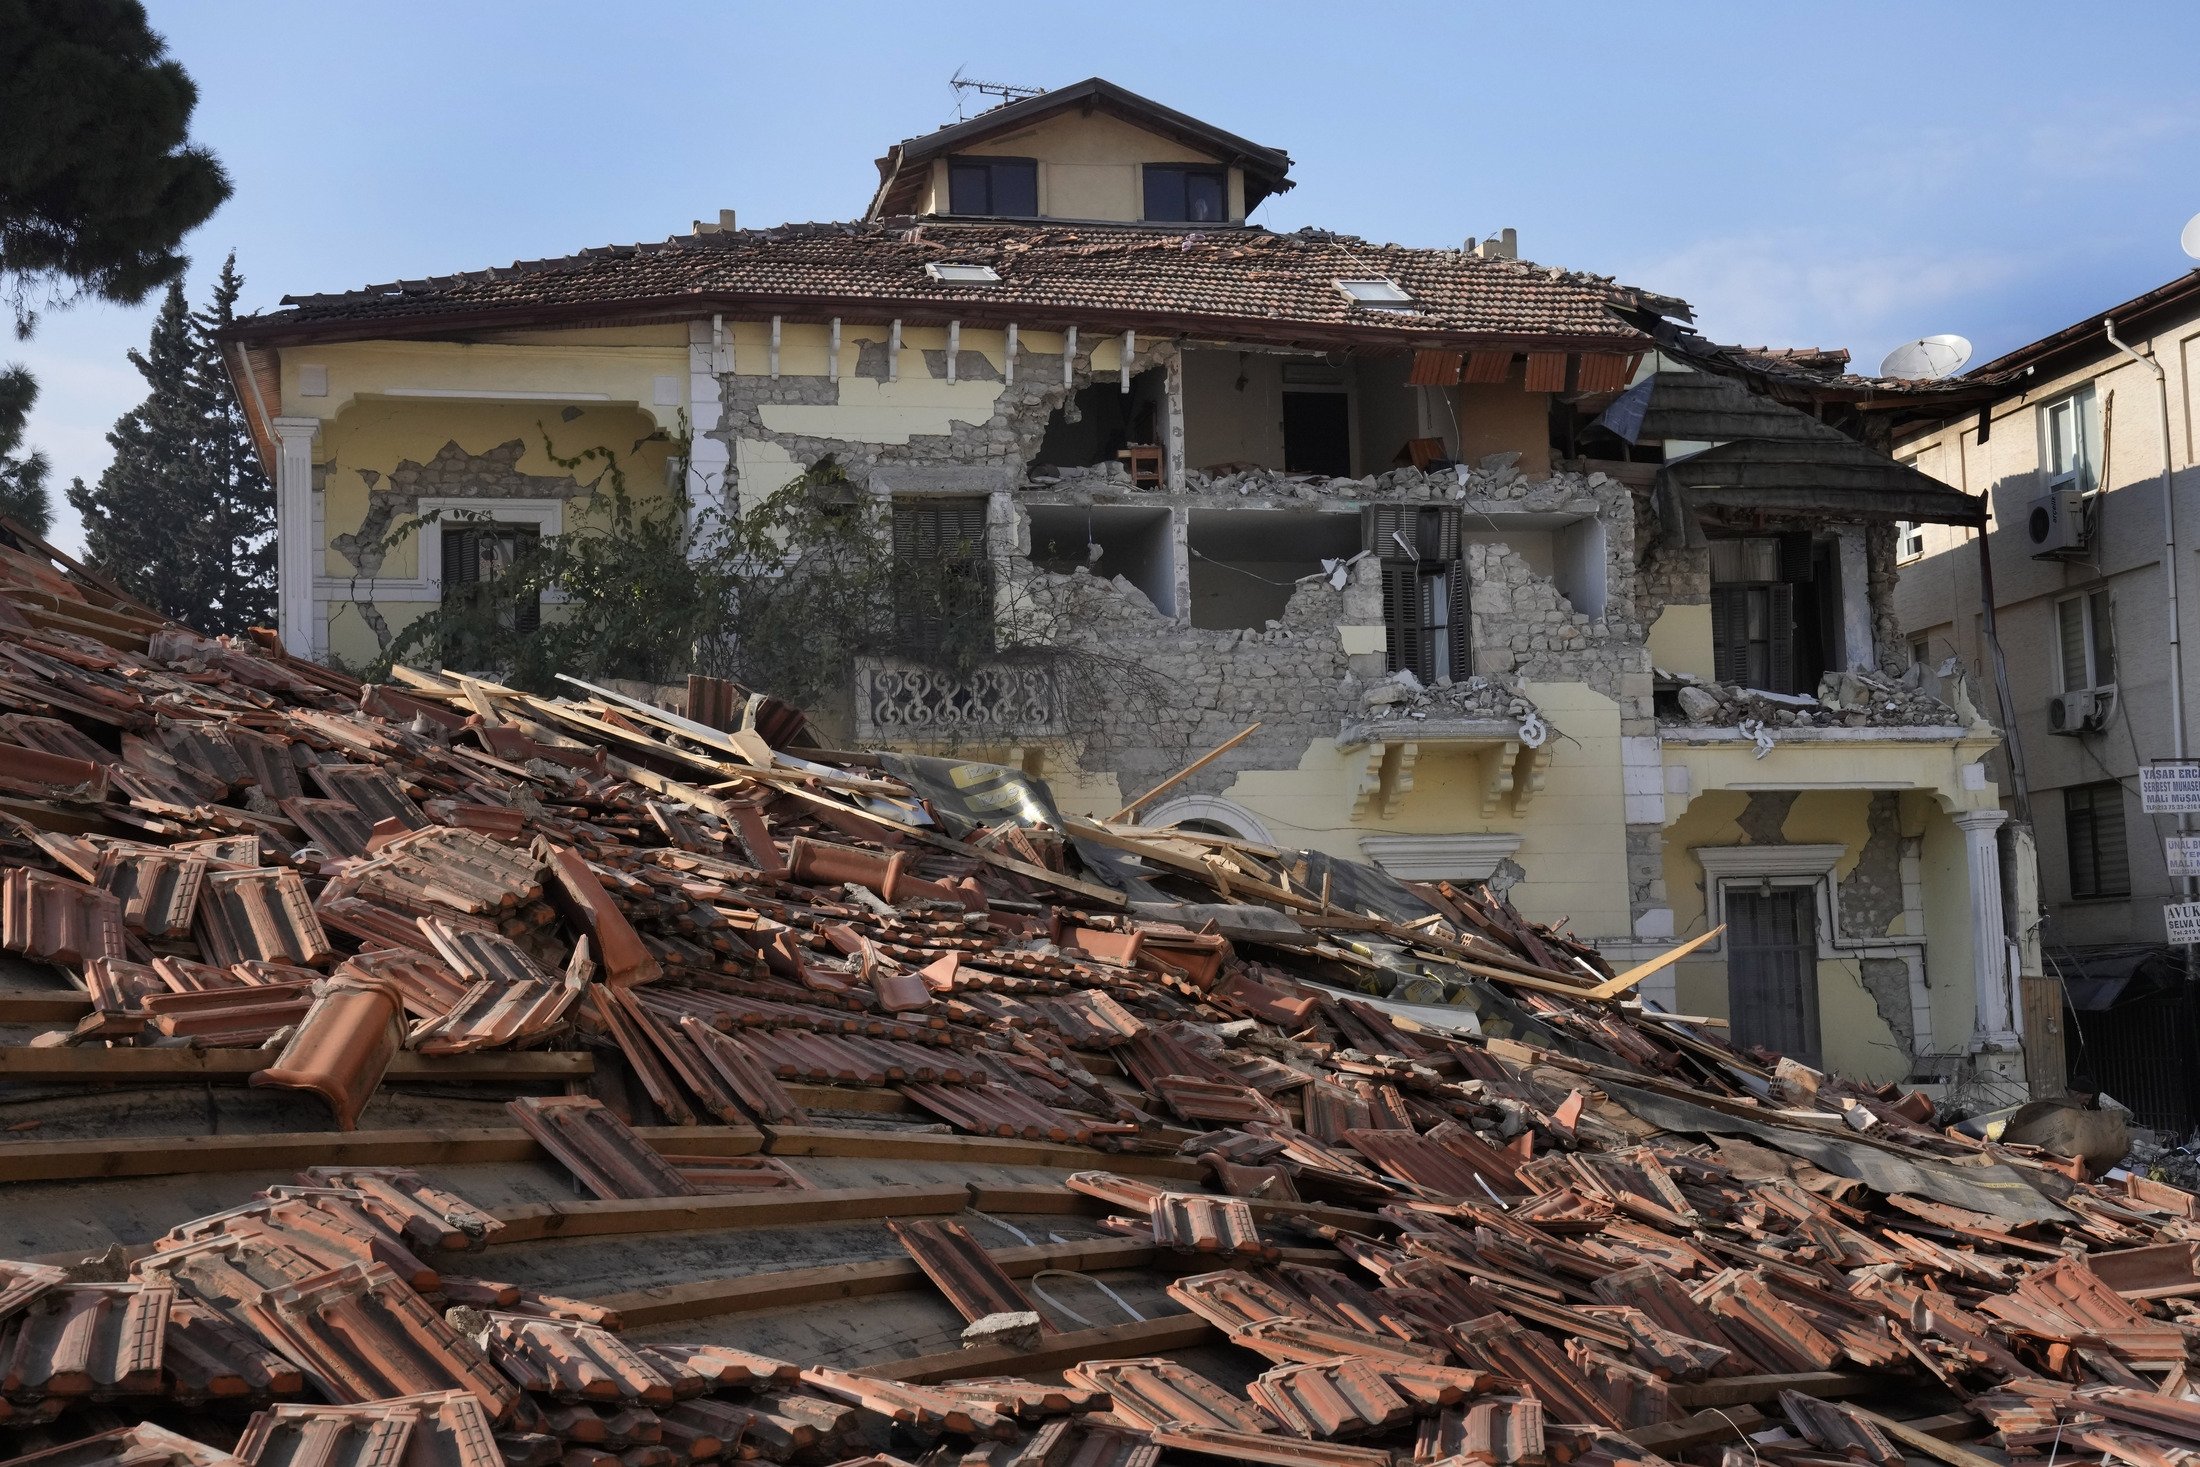 Türkiye, Antakya'nın eski şehrinde meydana gelen depremde yıkılan tarihi bir yapının görünümü, 13 Şubat 2023. (AP Fotoğrafı)